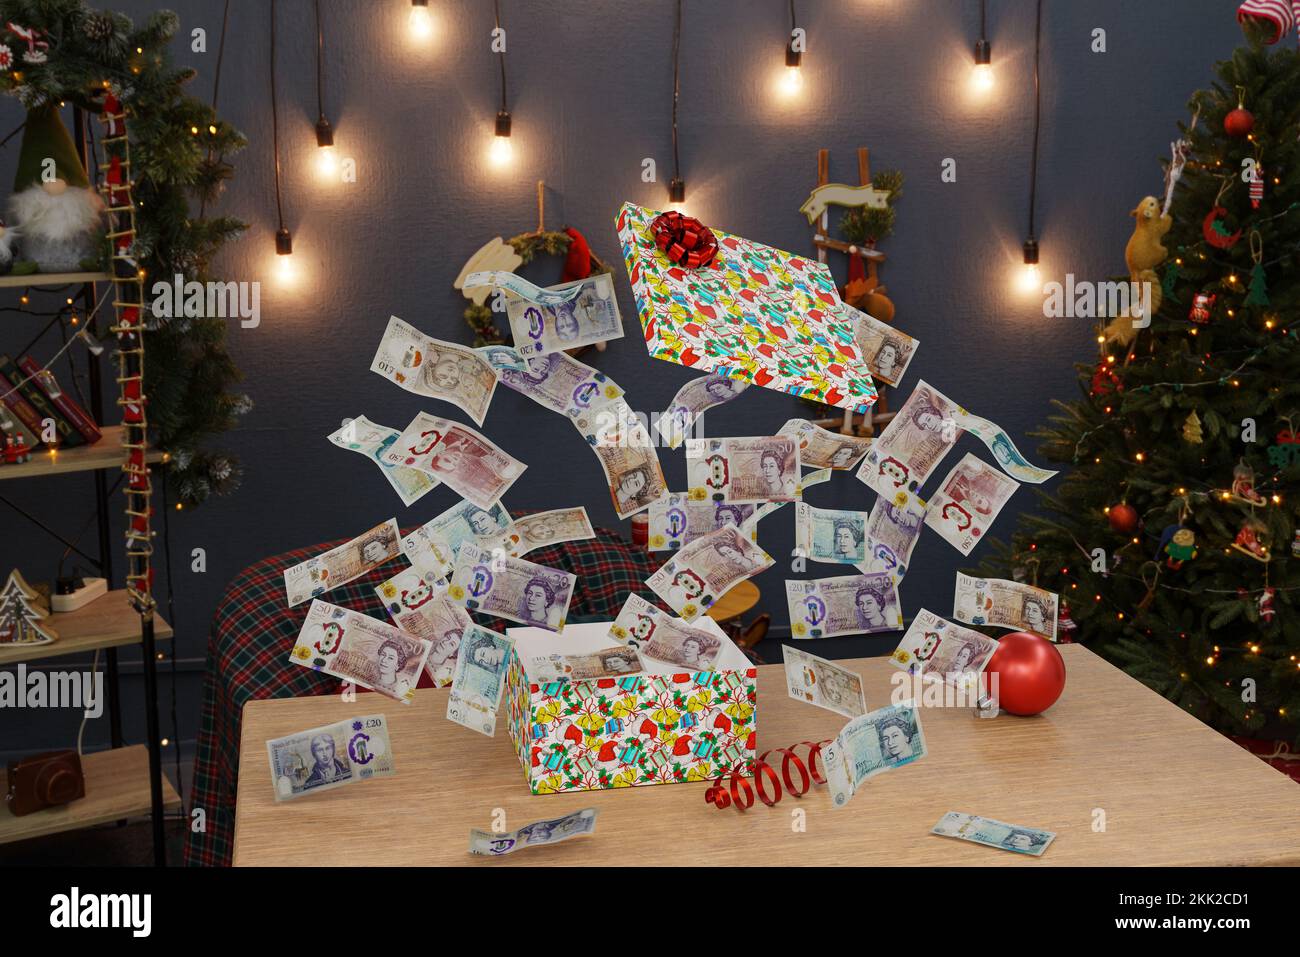 Noël cadeau de l'argent Livres espèces noël présent Royaume-Uni argent boîte cadeau Banque D'Images